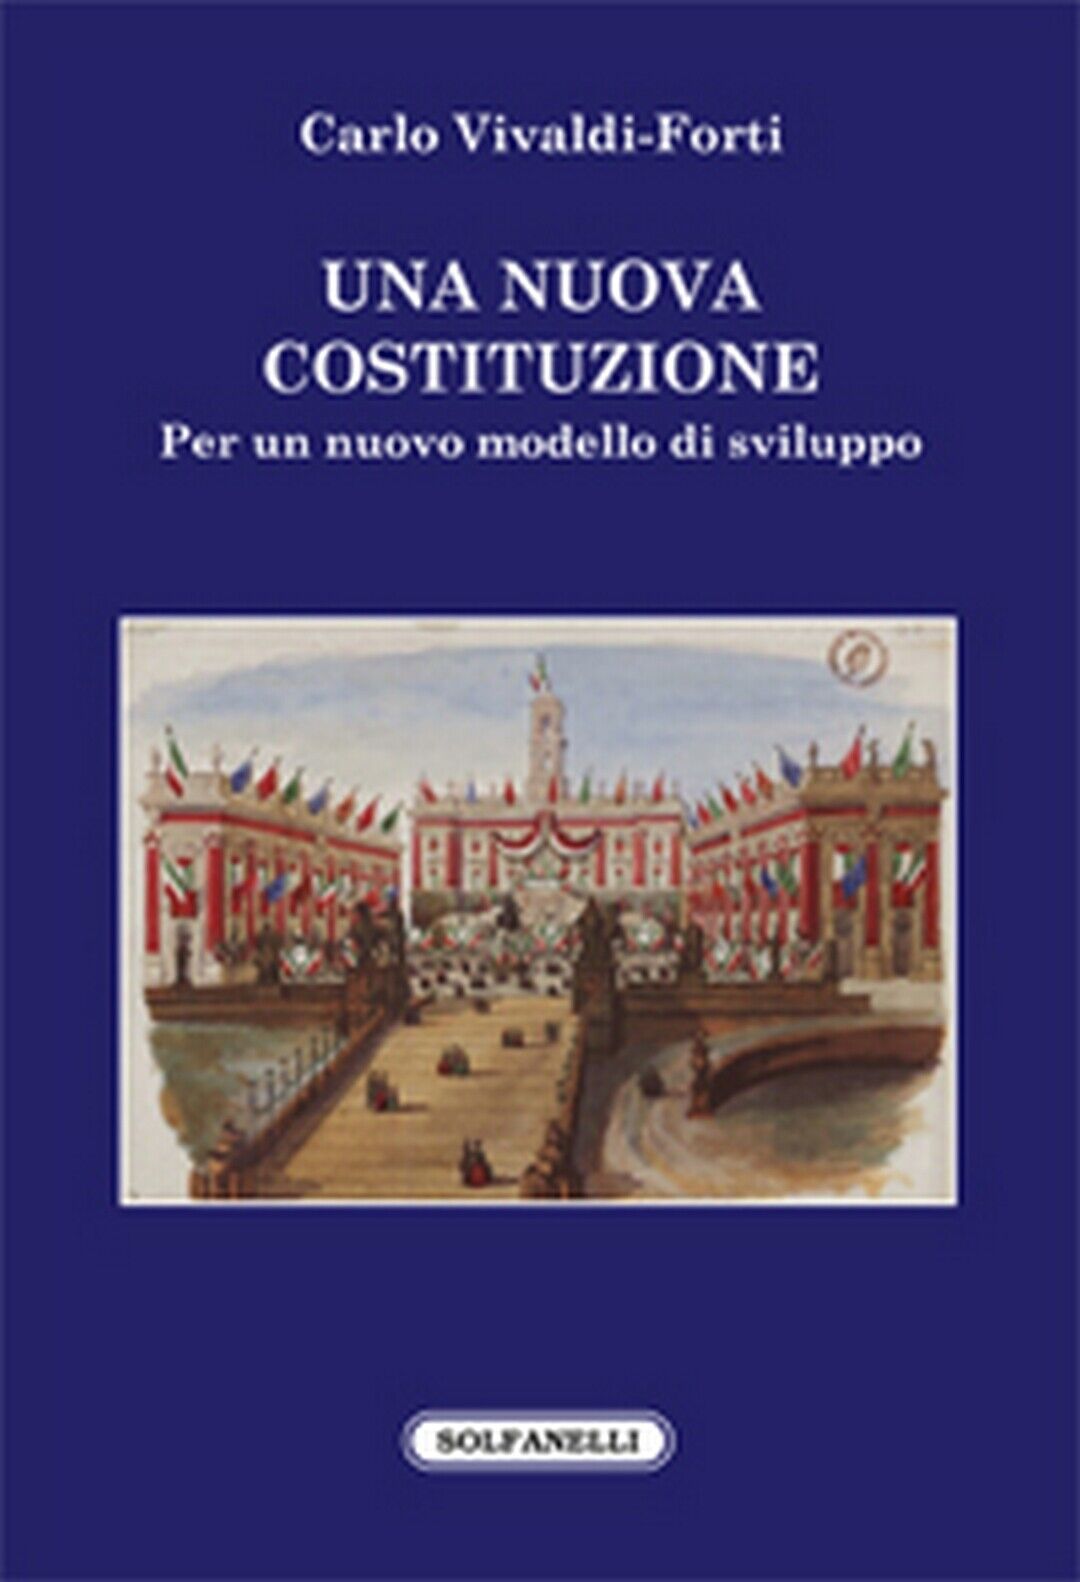 UNA NUOVA COSTITUZIONE  di Carlo Vivaldi-forti,  Solfanelli Edizioni